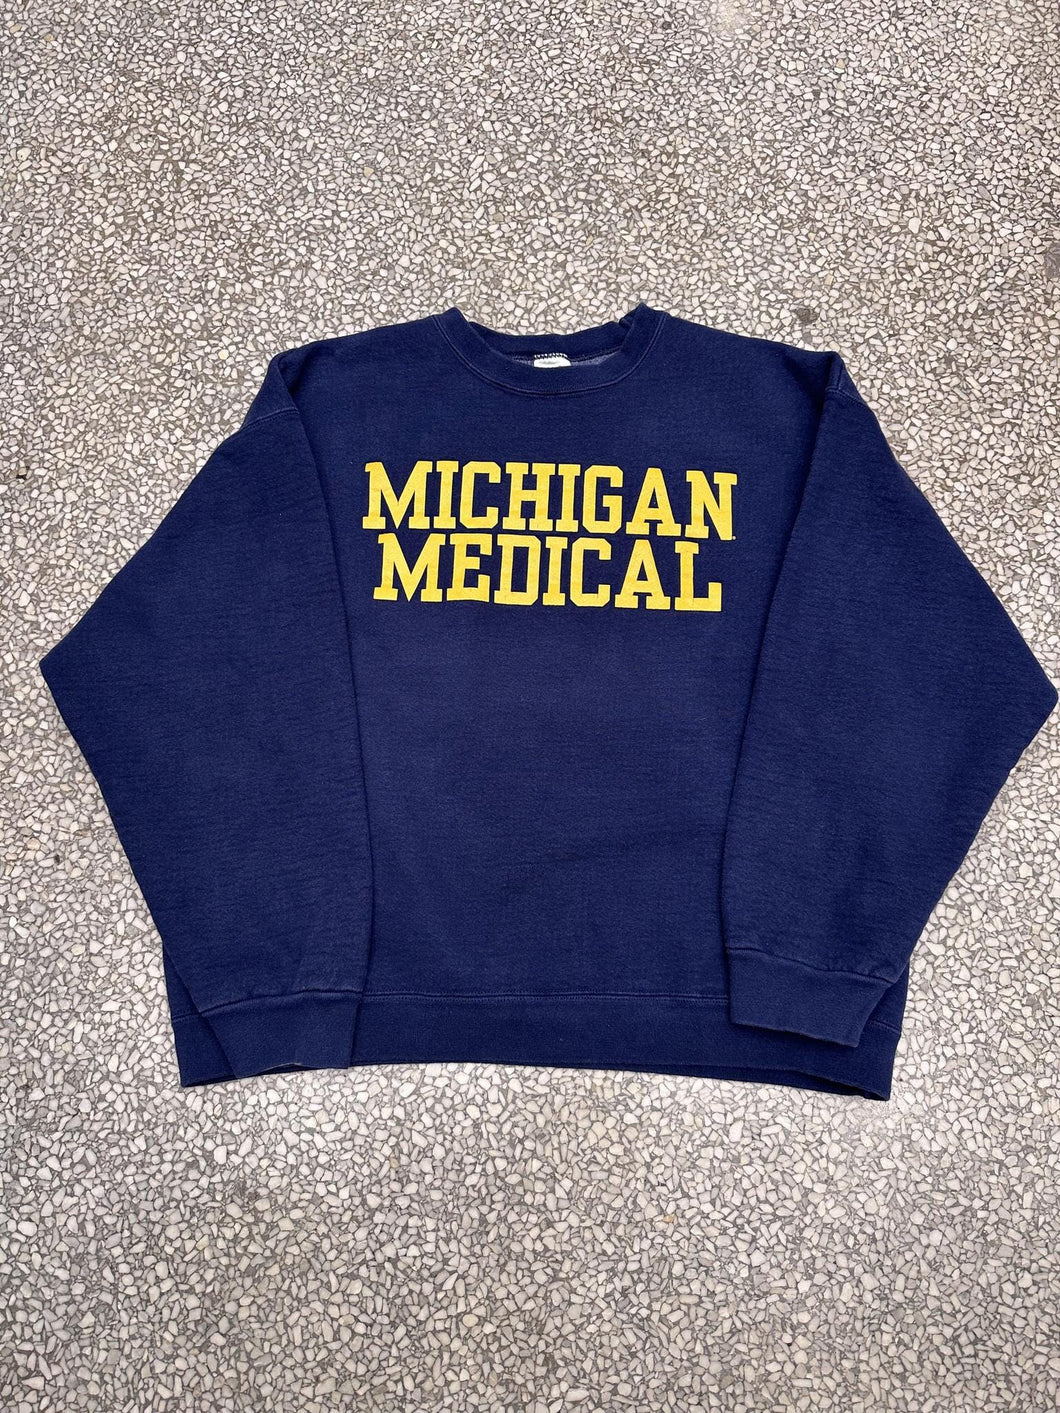 Michigan Medical Vintage 90s Crewneck Faded Navy ABC Vintage 